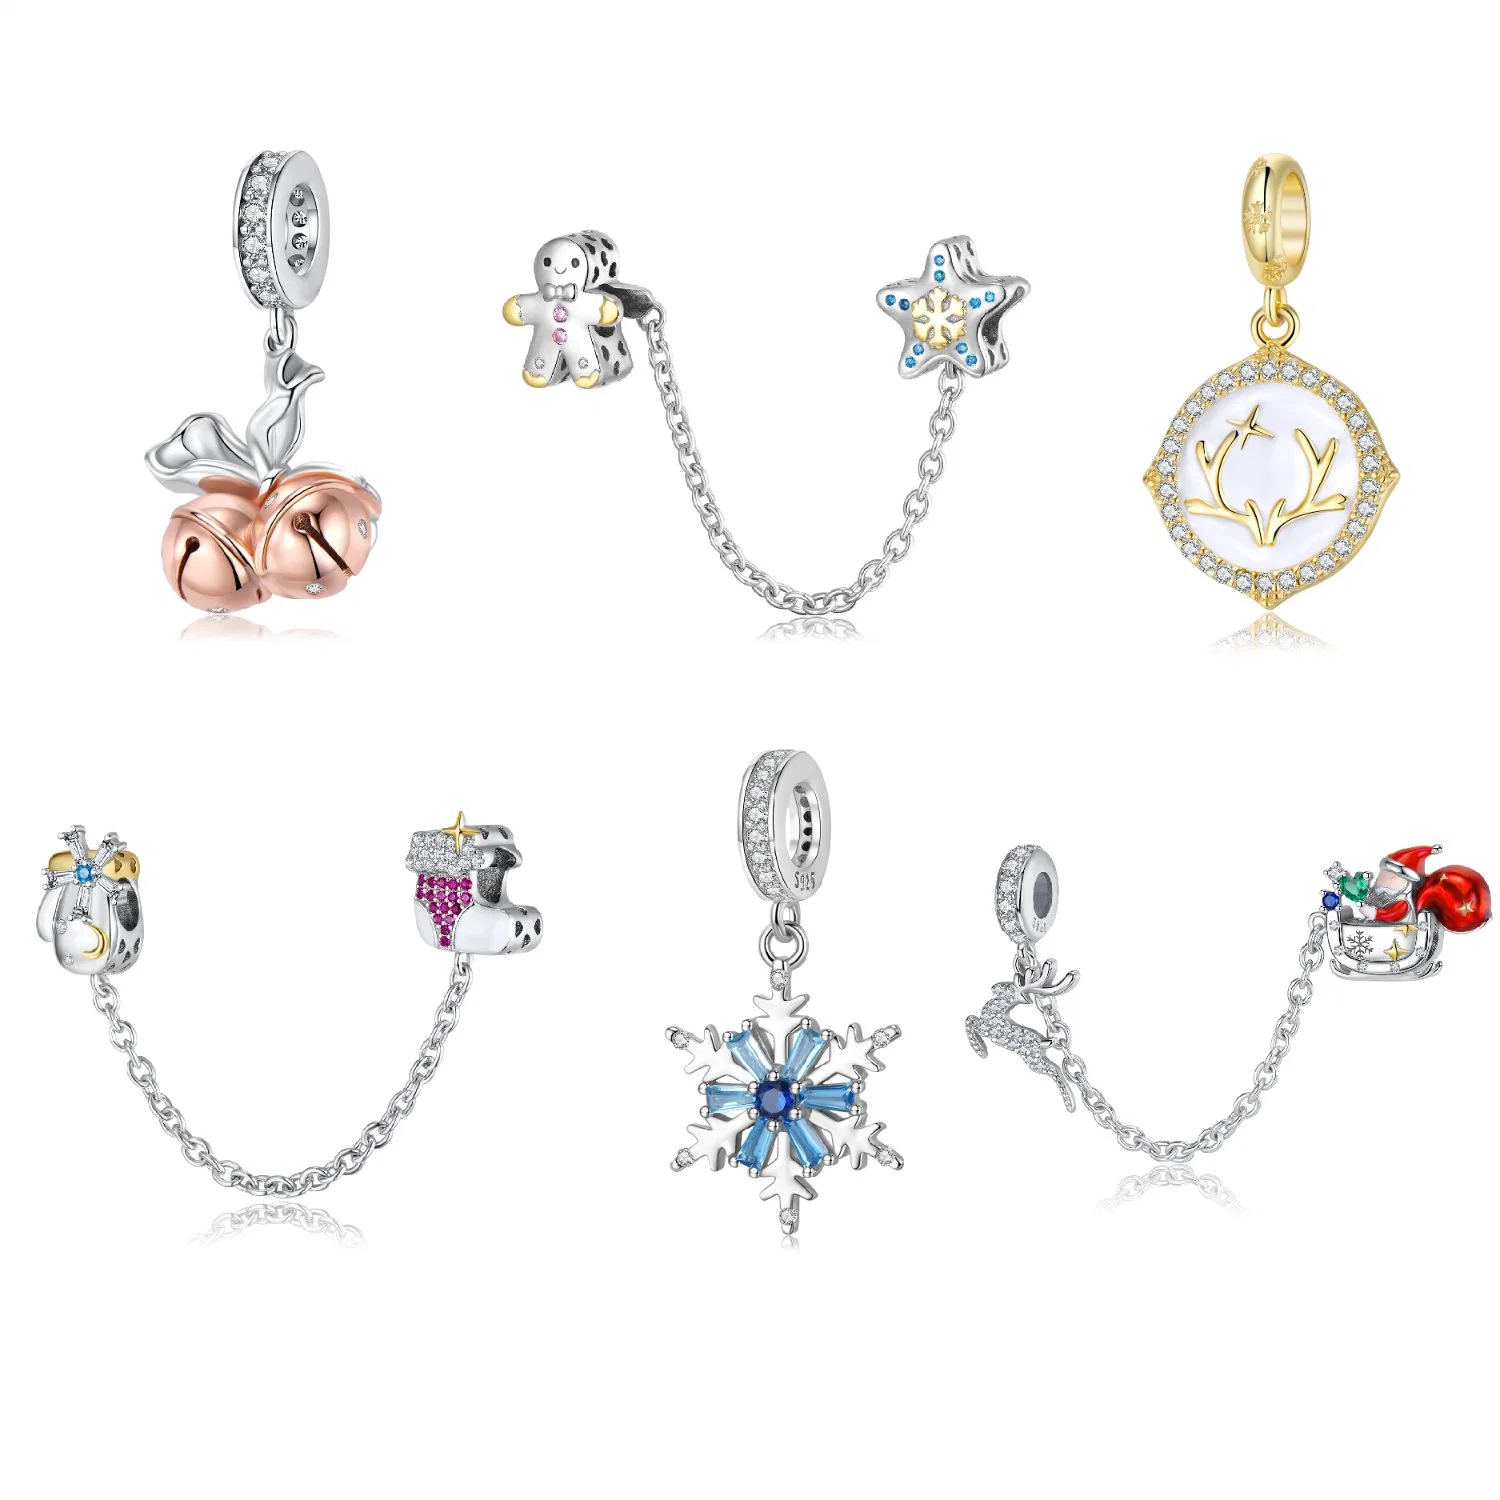 Inspirado en la marca de bisutería abalorios de cristal S925 de piedras preciosas plata esterlina Charms Charms Necklace Bracelet DIY Accesorios Regalo de Navidad para niños